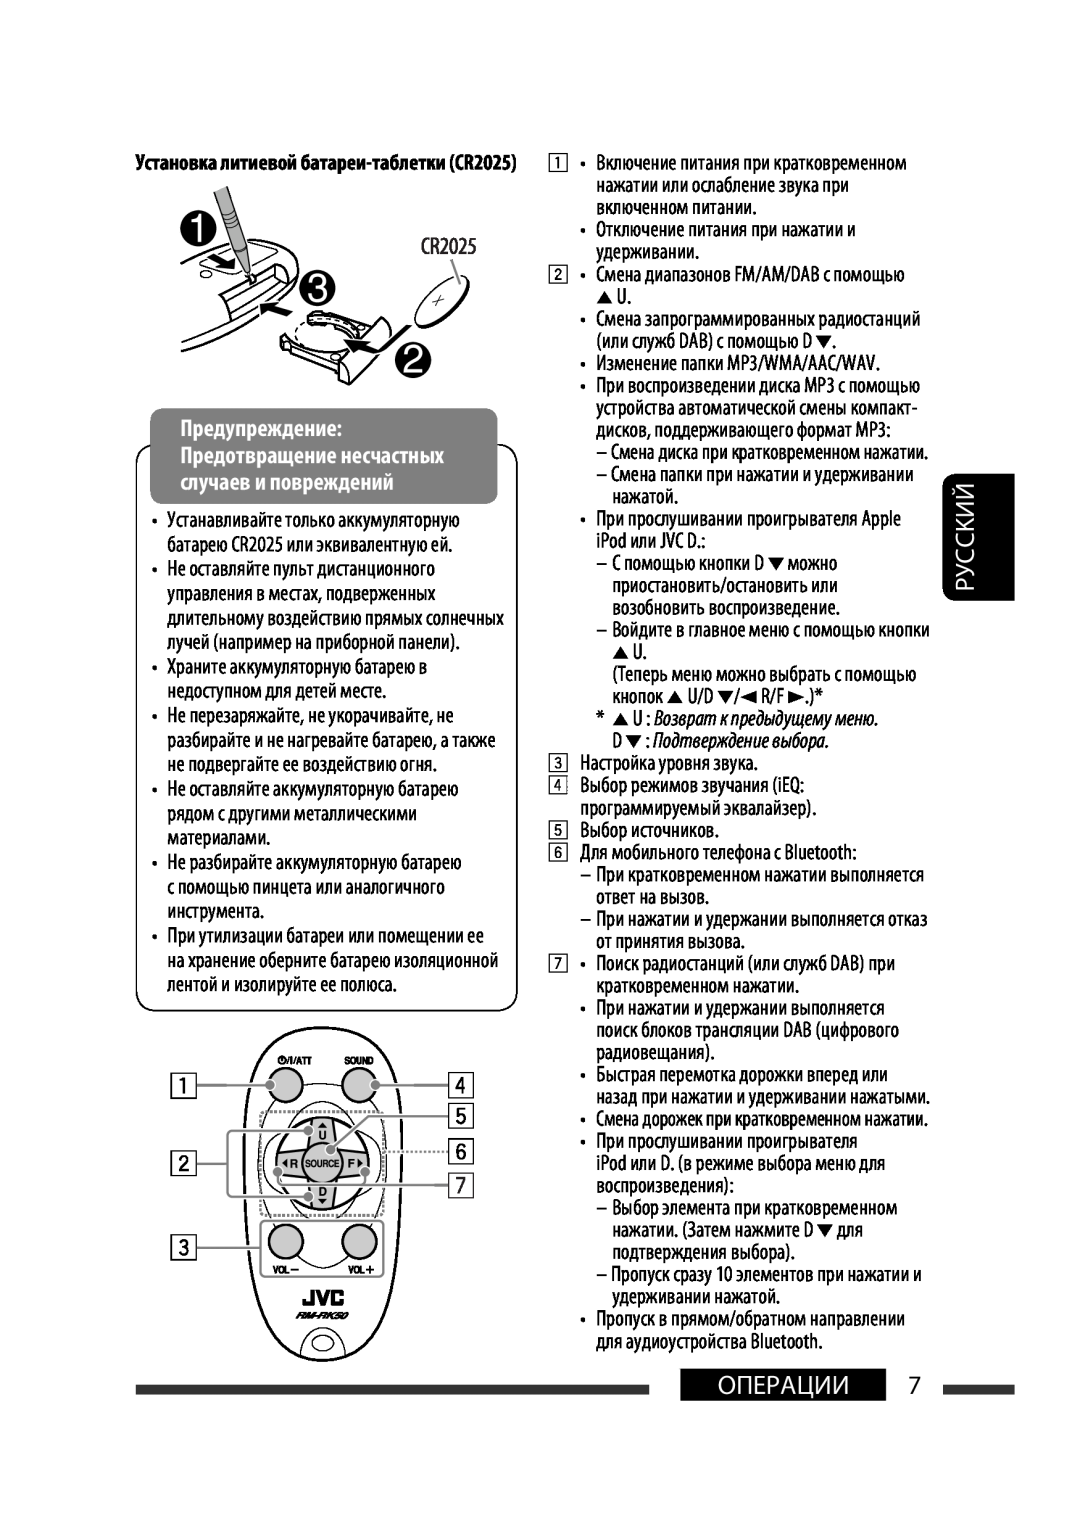 JVC KW-XG701 manual D ∞ Подтверждение выбора, Руcckий, Операции, Отключение питания при нажатии и удерживании 